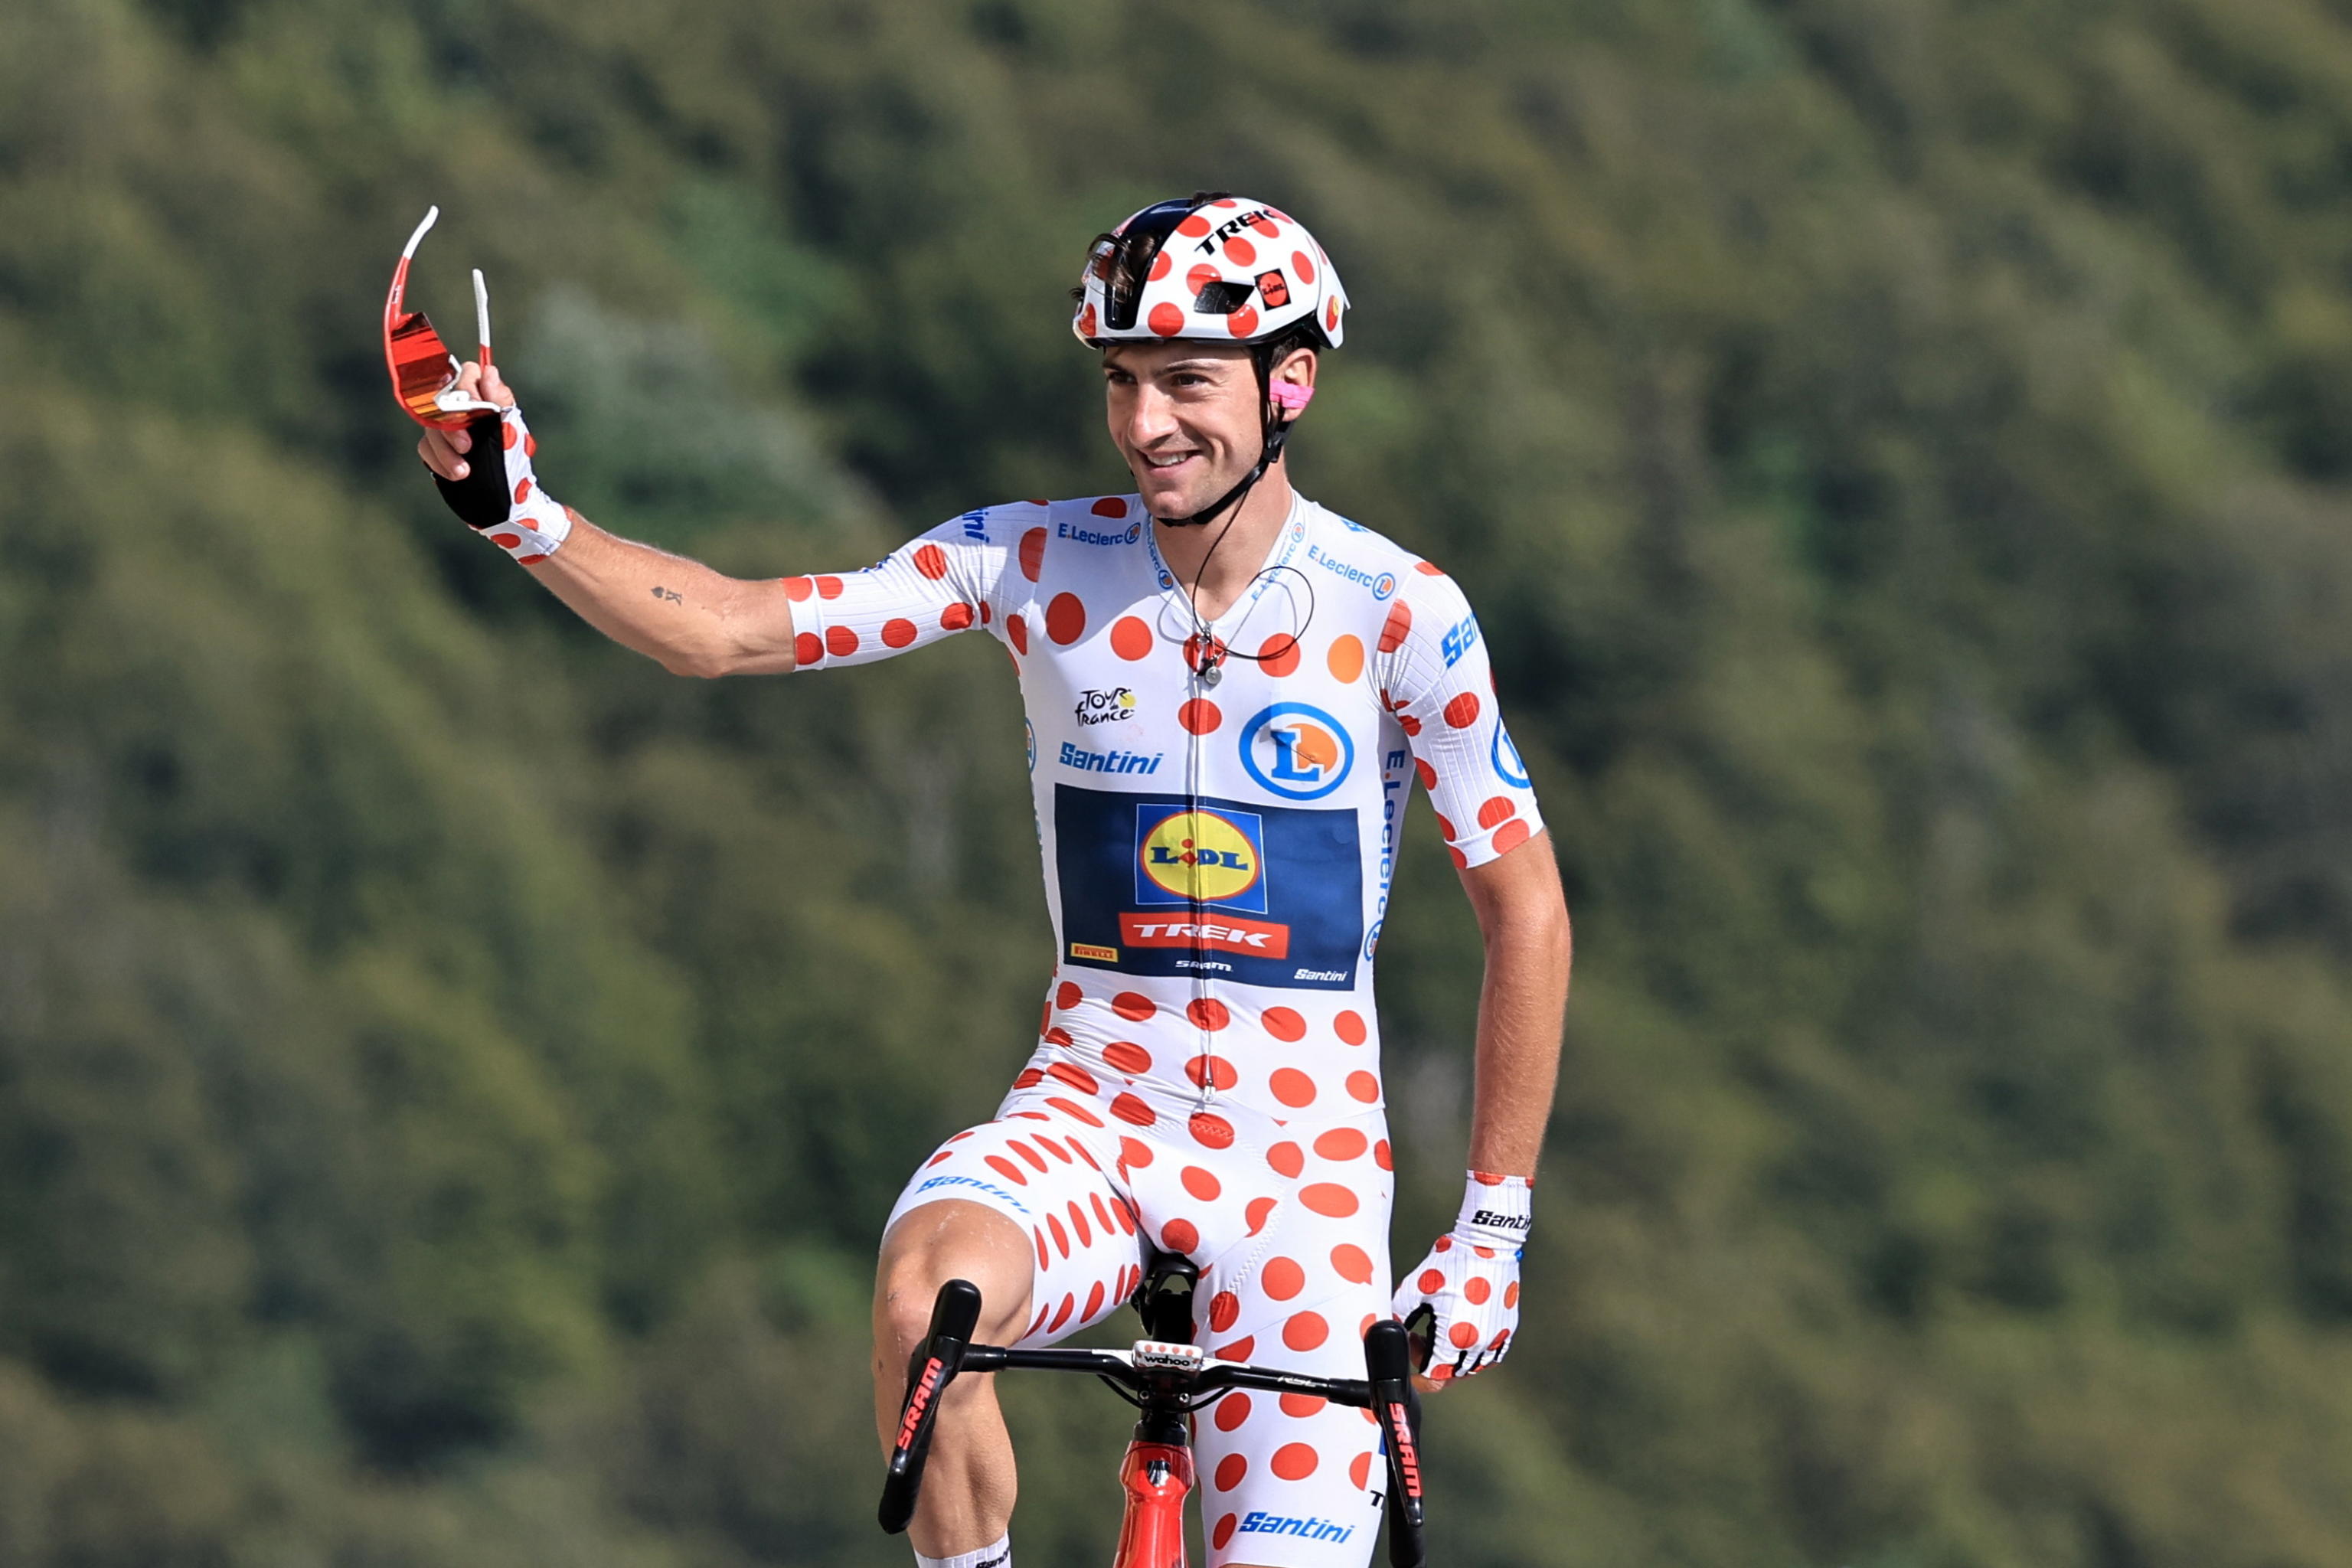 Ciccone maglia a pois al Tour de France Giulio entra nella Storia